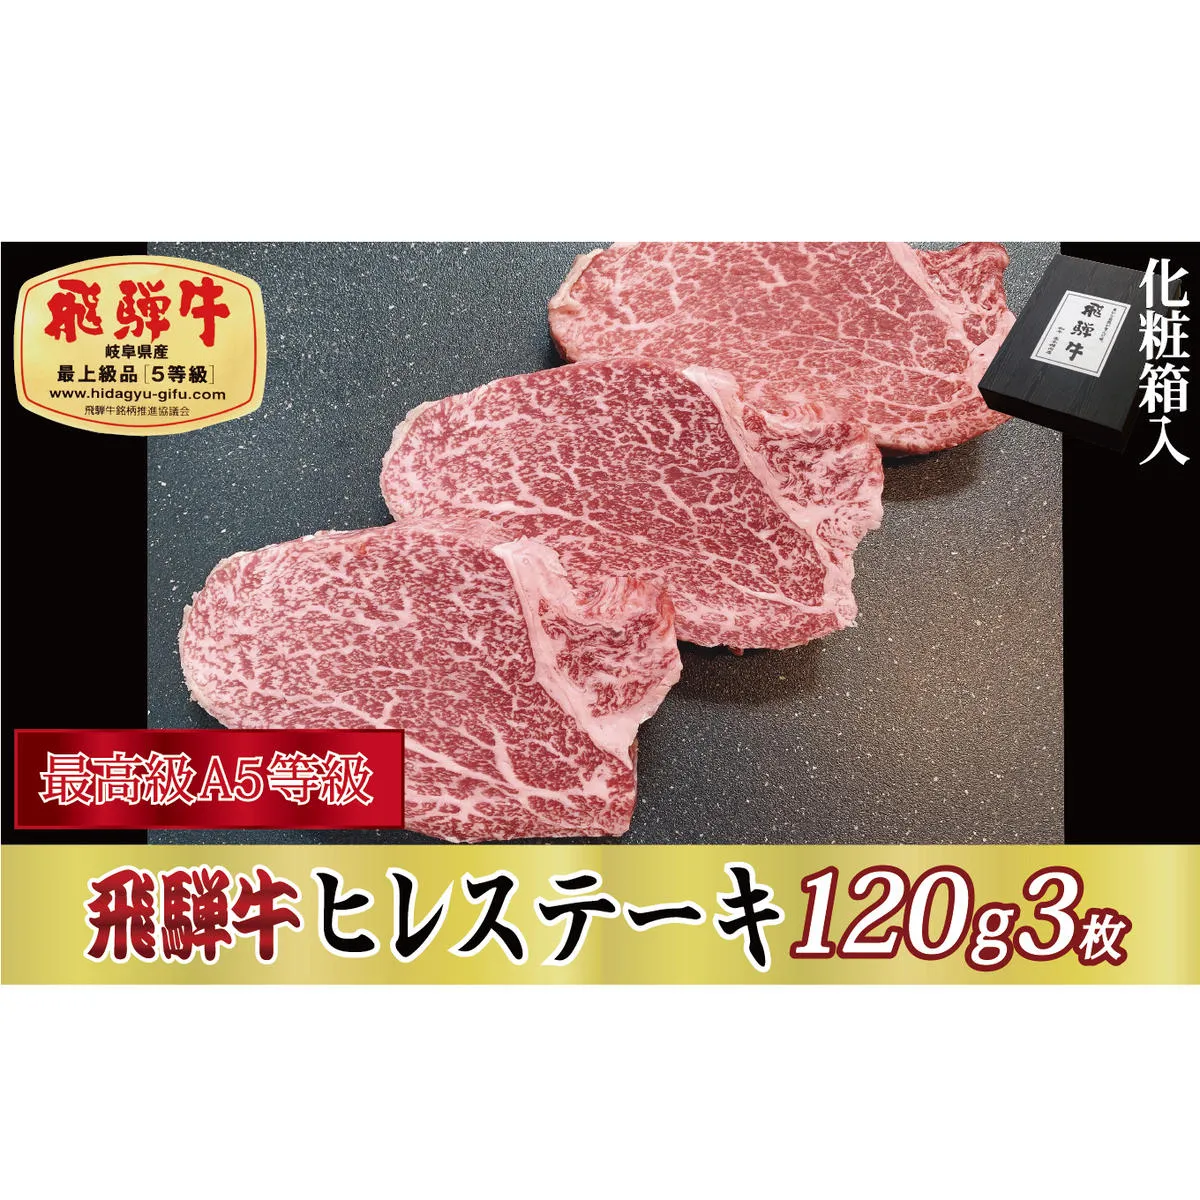 【化粧箱入り・最高級A5等級】飛騨牛ヒレステーキ120g×3枚